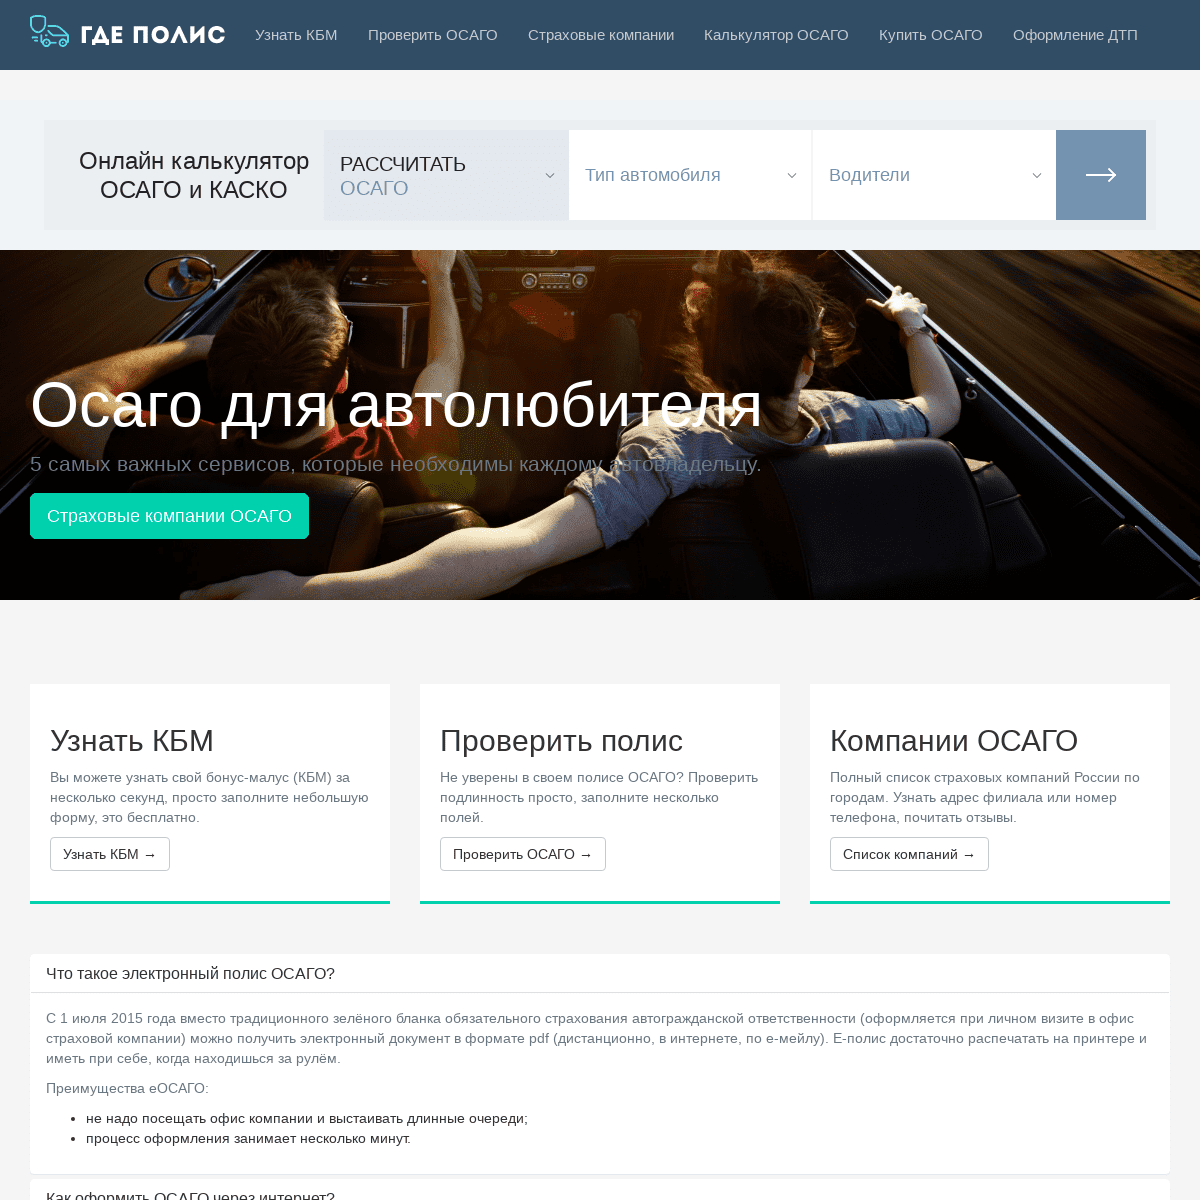 GdePolis.ru — все про автострахование ОСАГО